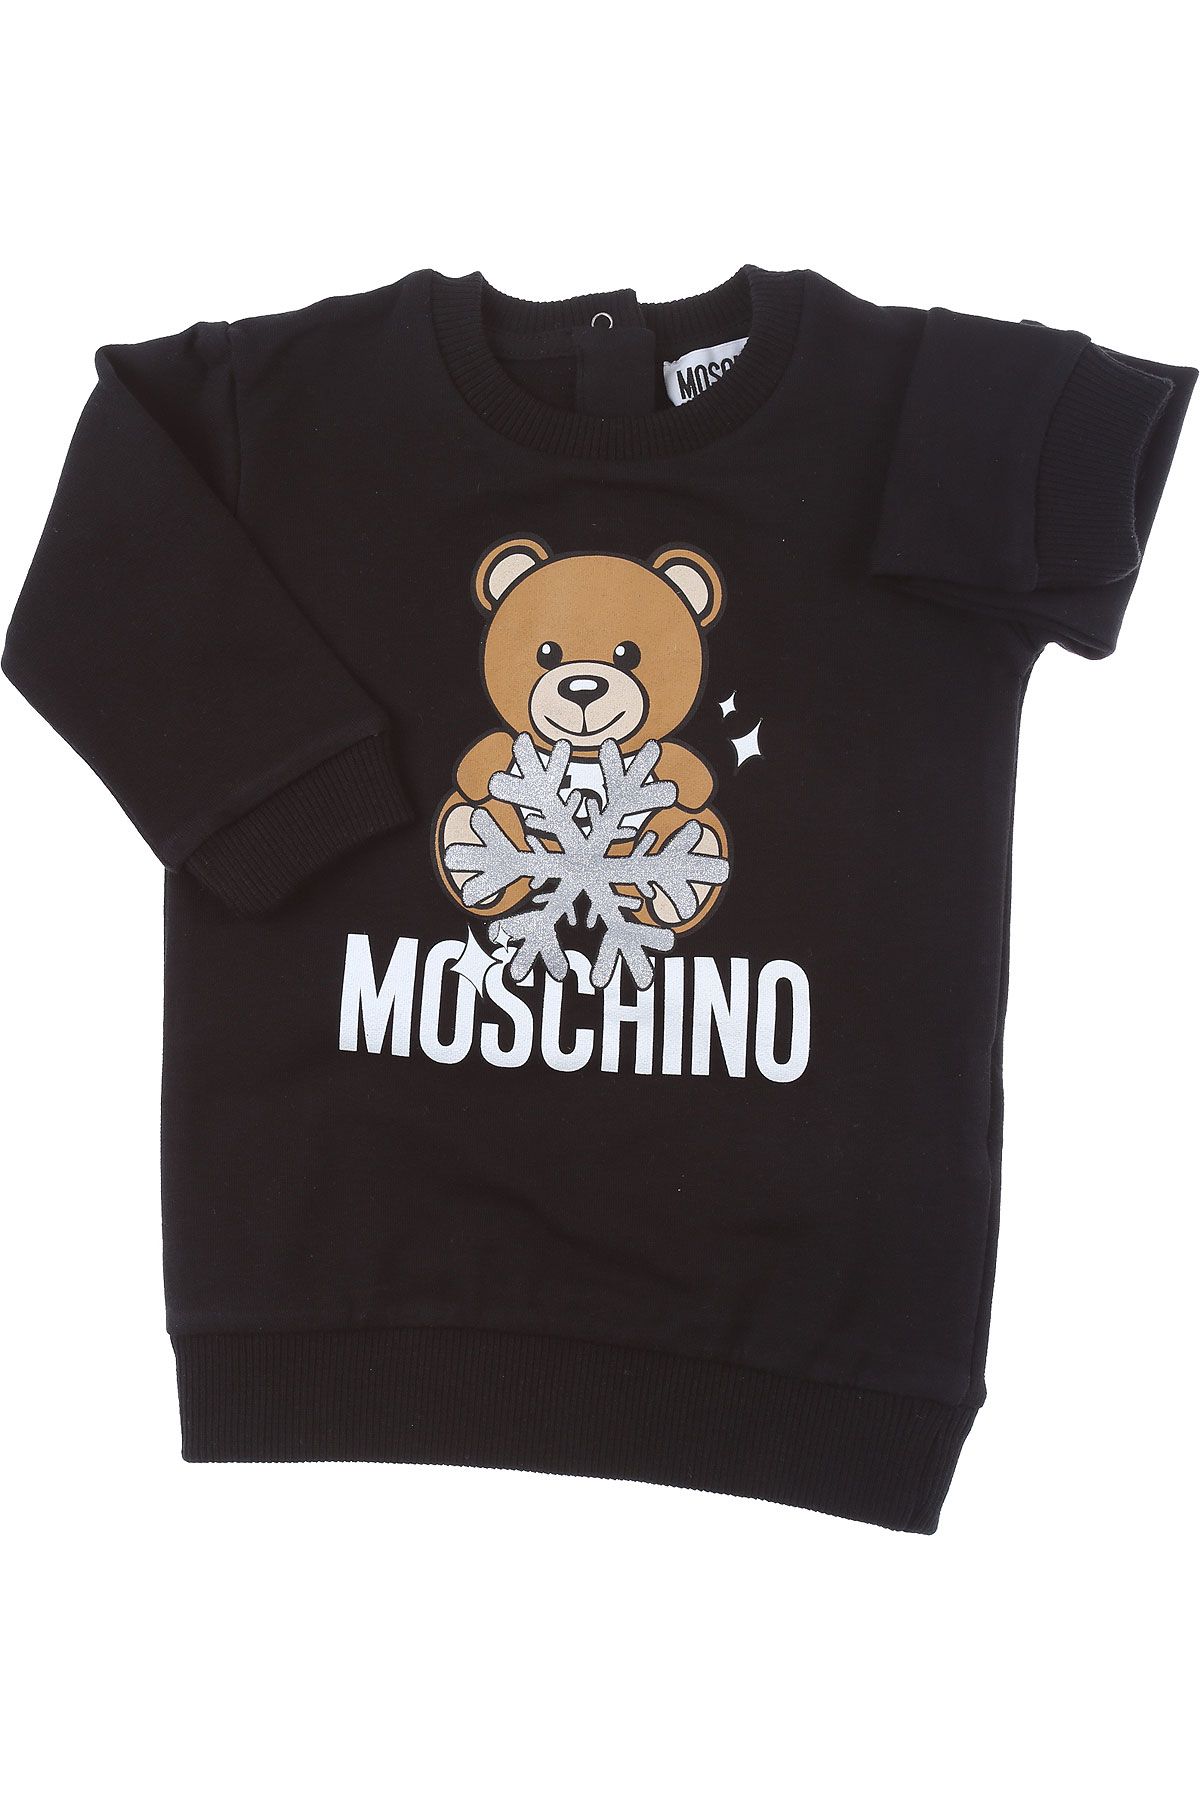 Moschino Baby Kleid für Mädchen Günstig im Sale, Schwarz, Baumwolle, 2017, 12M 18M 24M 3Y 9M